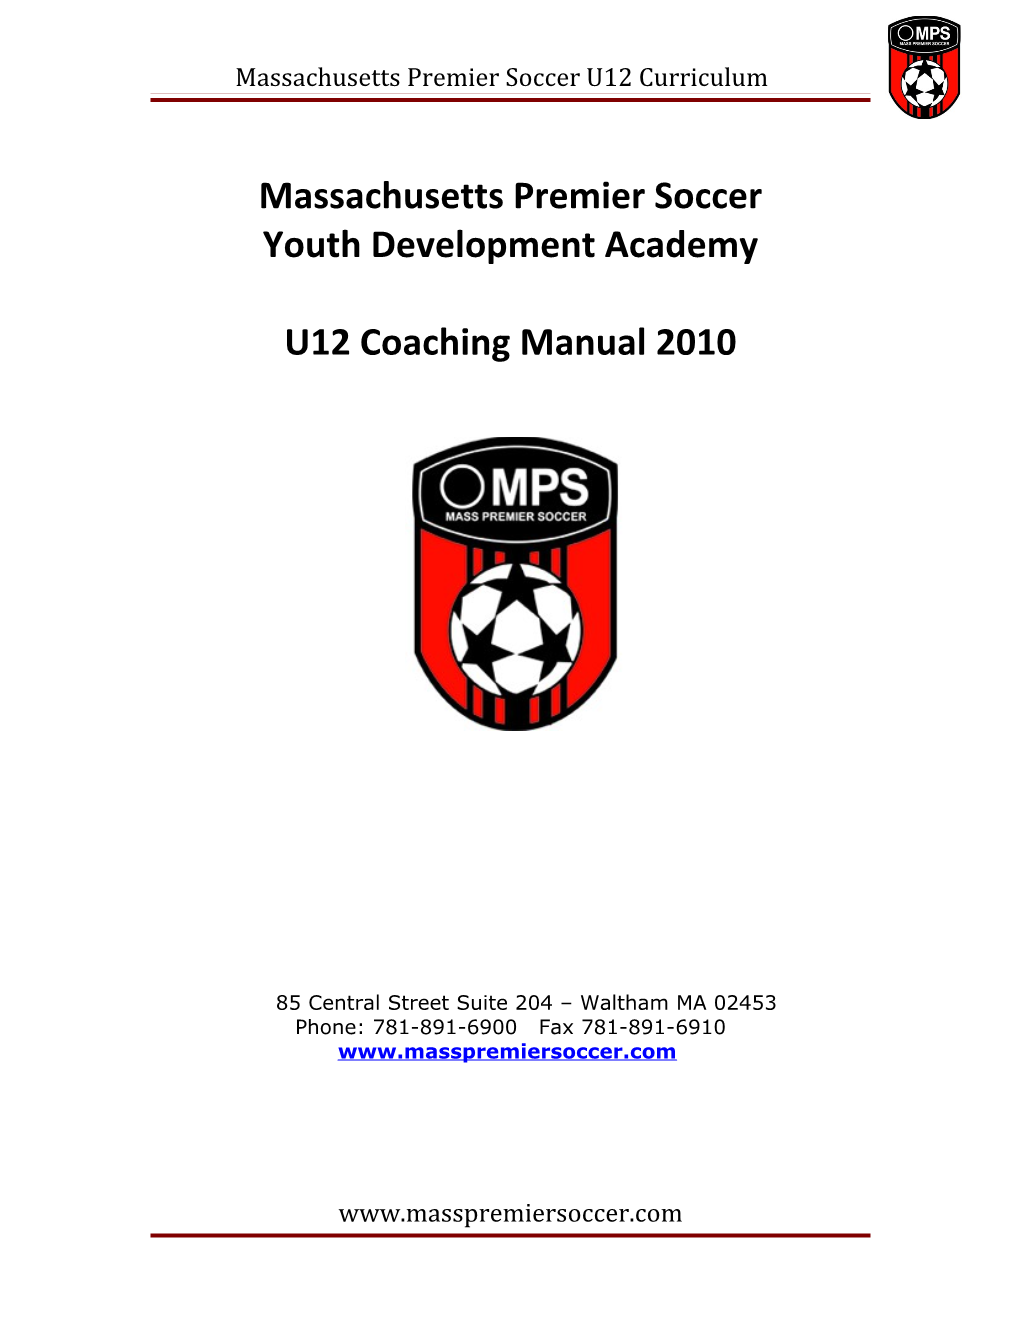 Massachusetts Premier Soccer s1